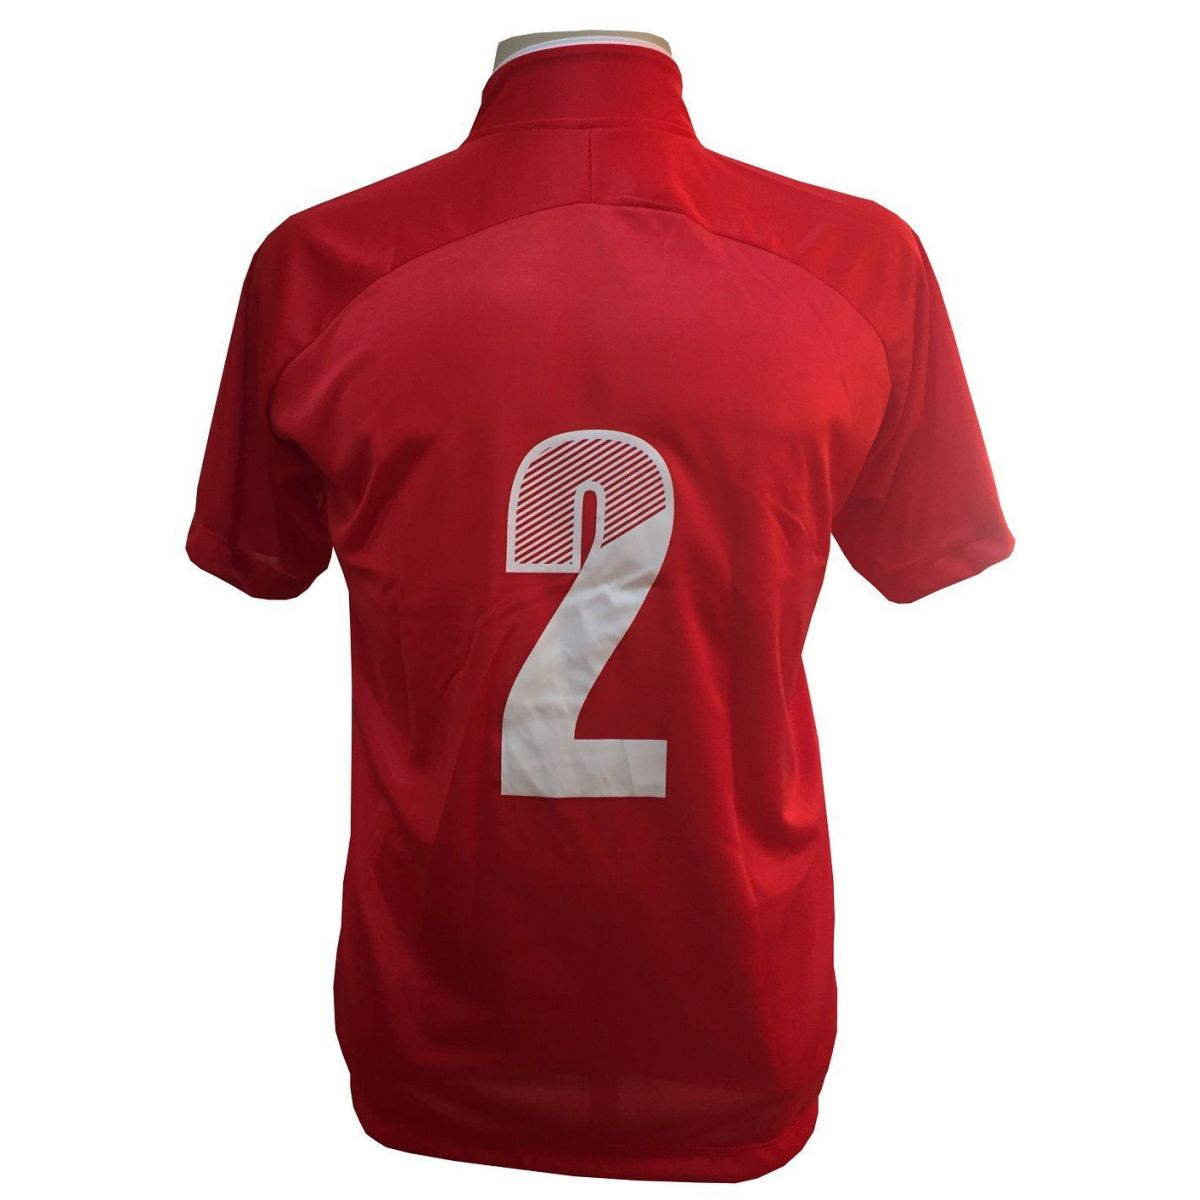 Uniforme Esportivo com 12 camisas modelo City Vermelho/Branco + 12 calções modelo Copa Vermelho/Branco + Brindes